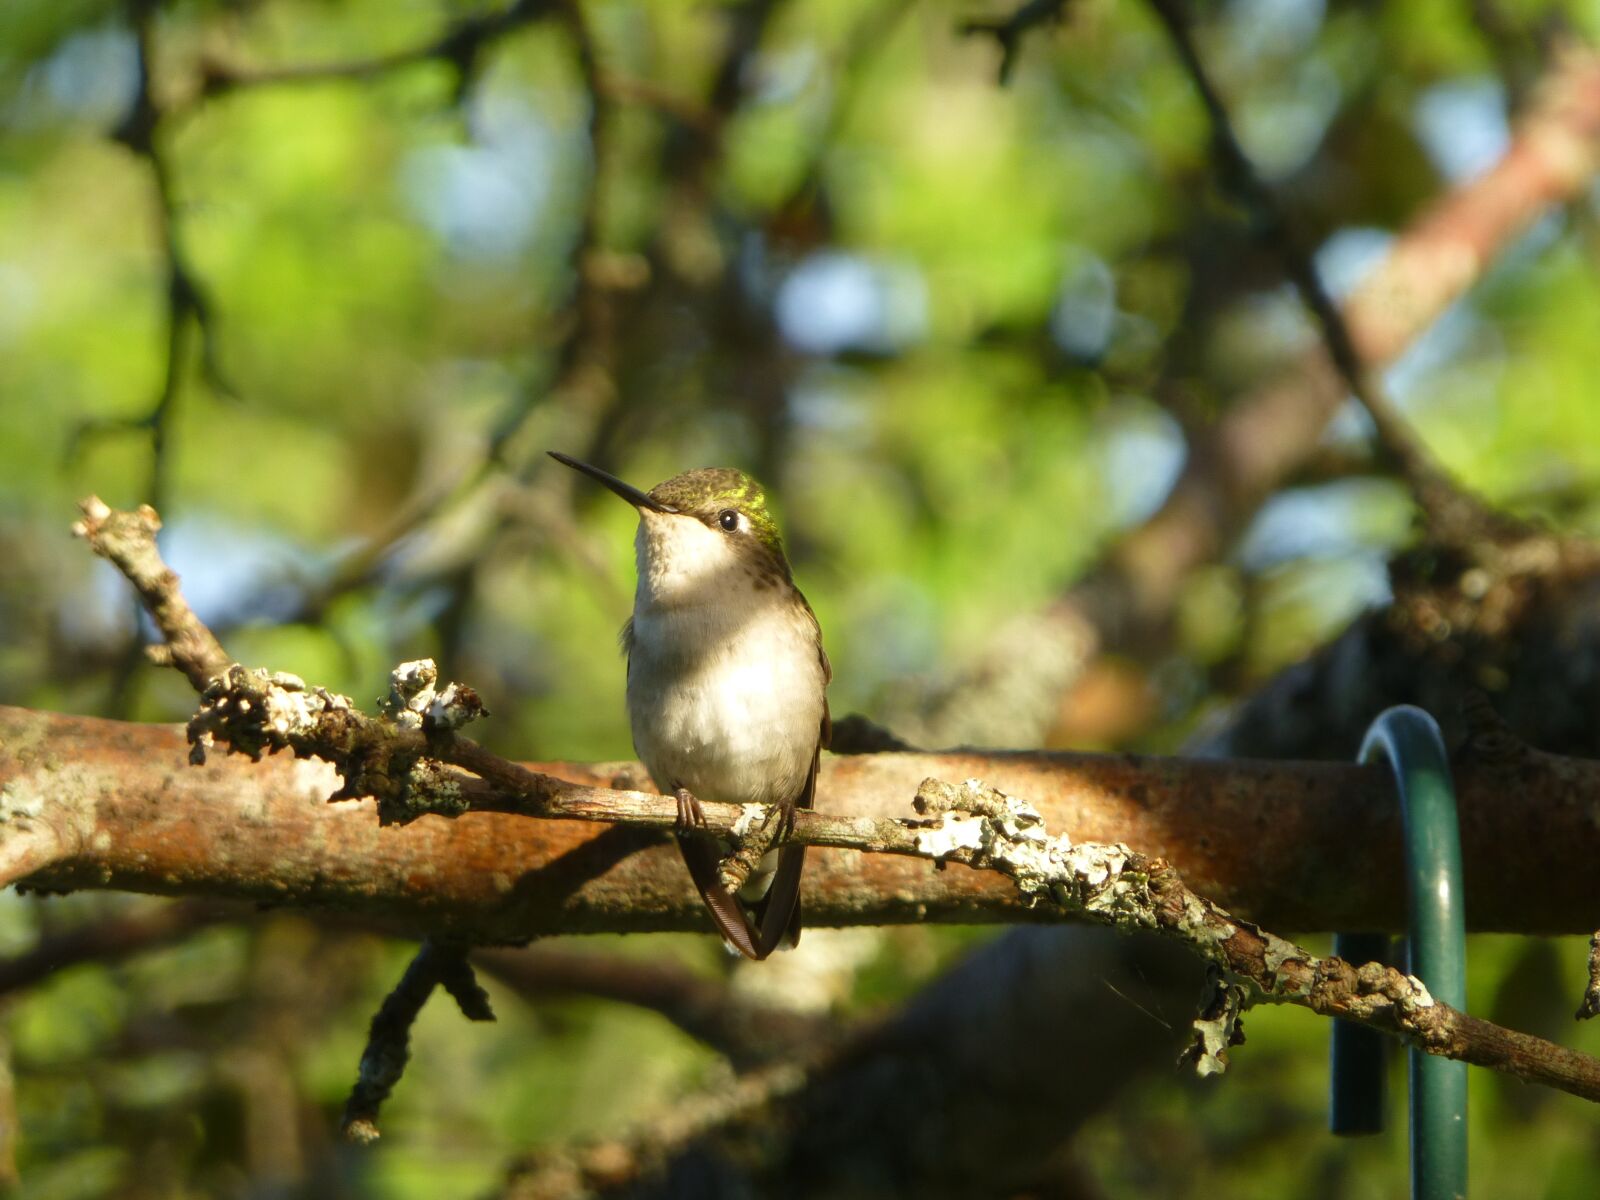 Panasonic DMC-ZS19 sample photo. Hummingbird, bird, nature photography